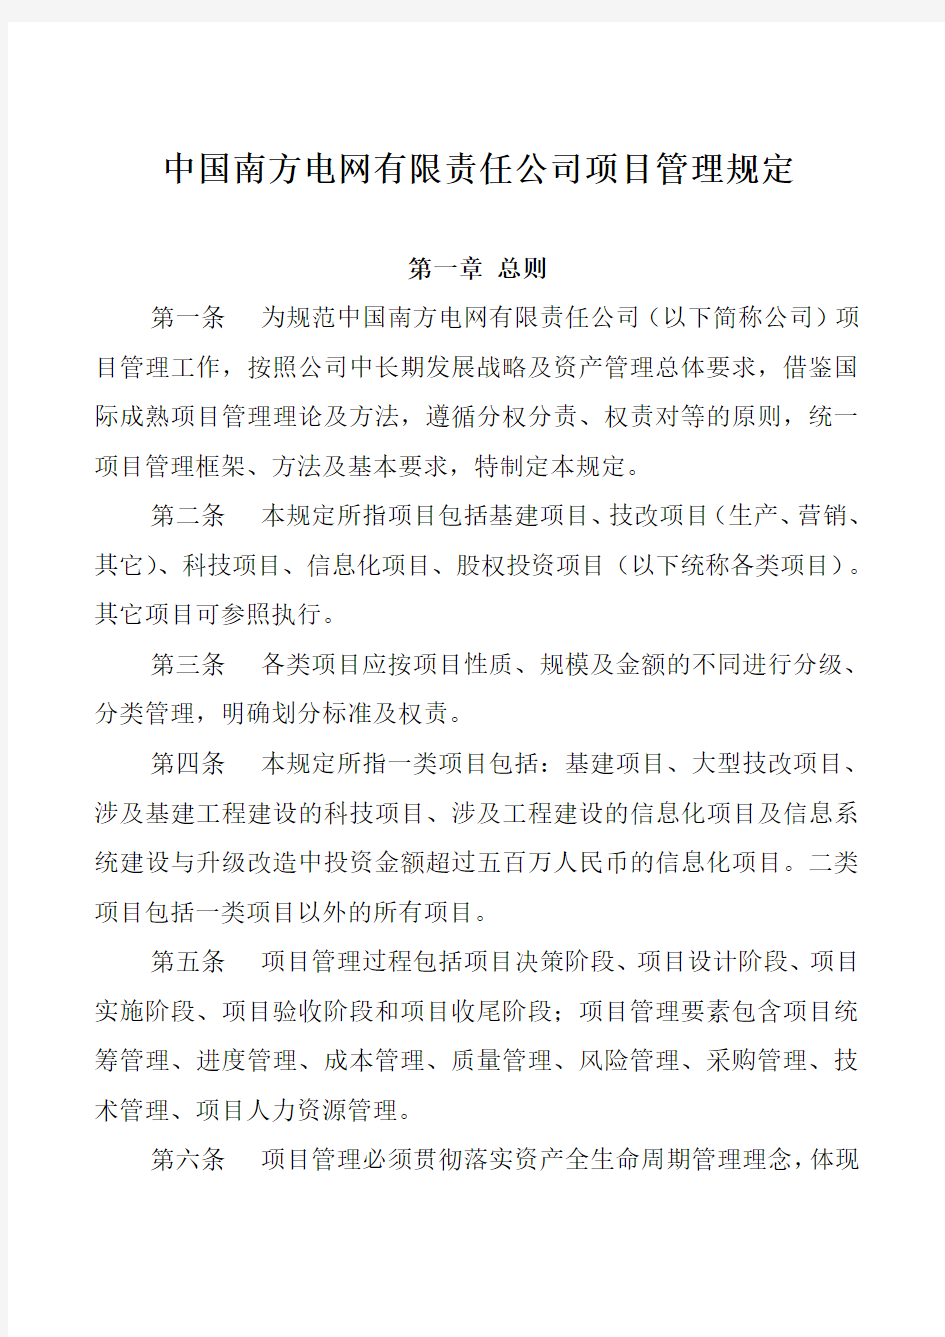 NW-GC-88中国南方电网有限责任公司项目管理规定教学文案